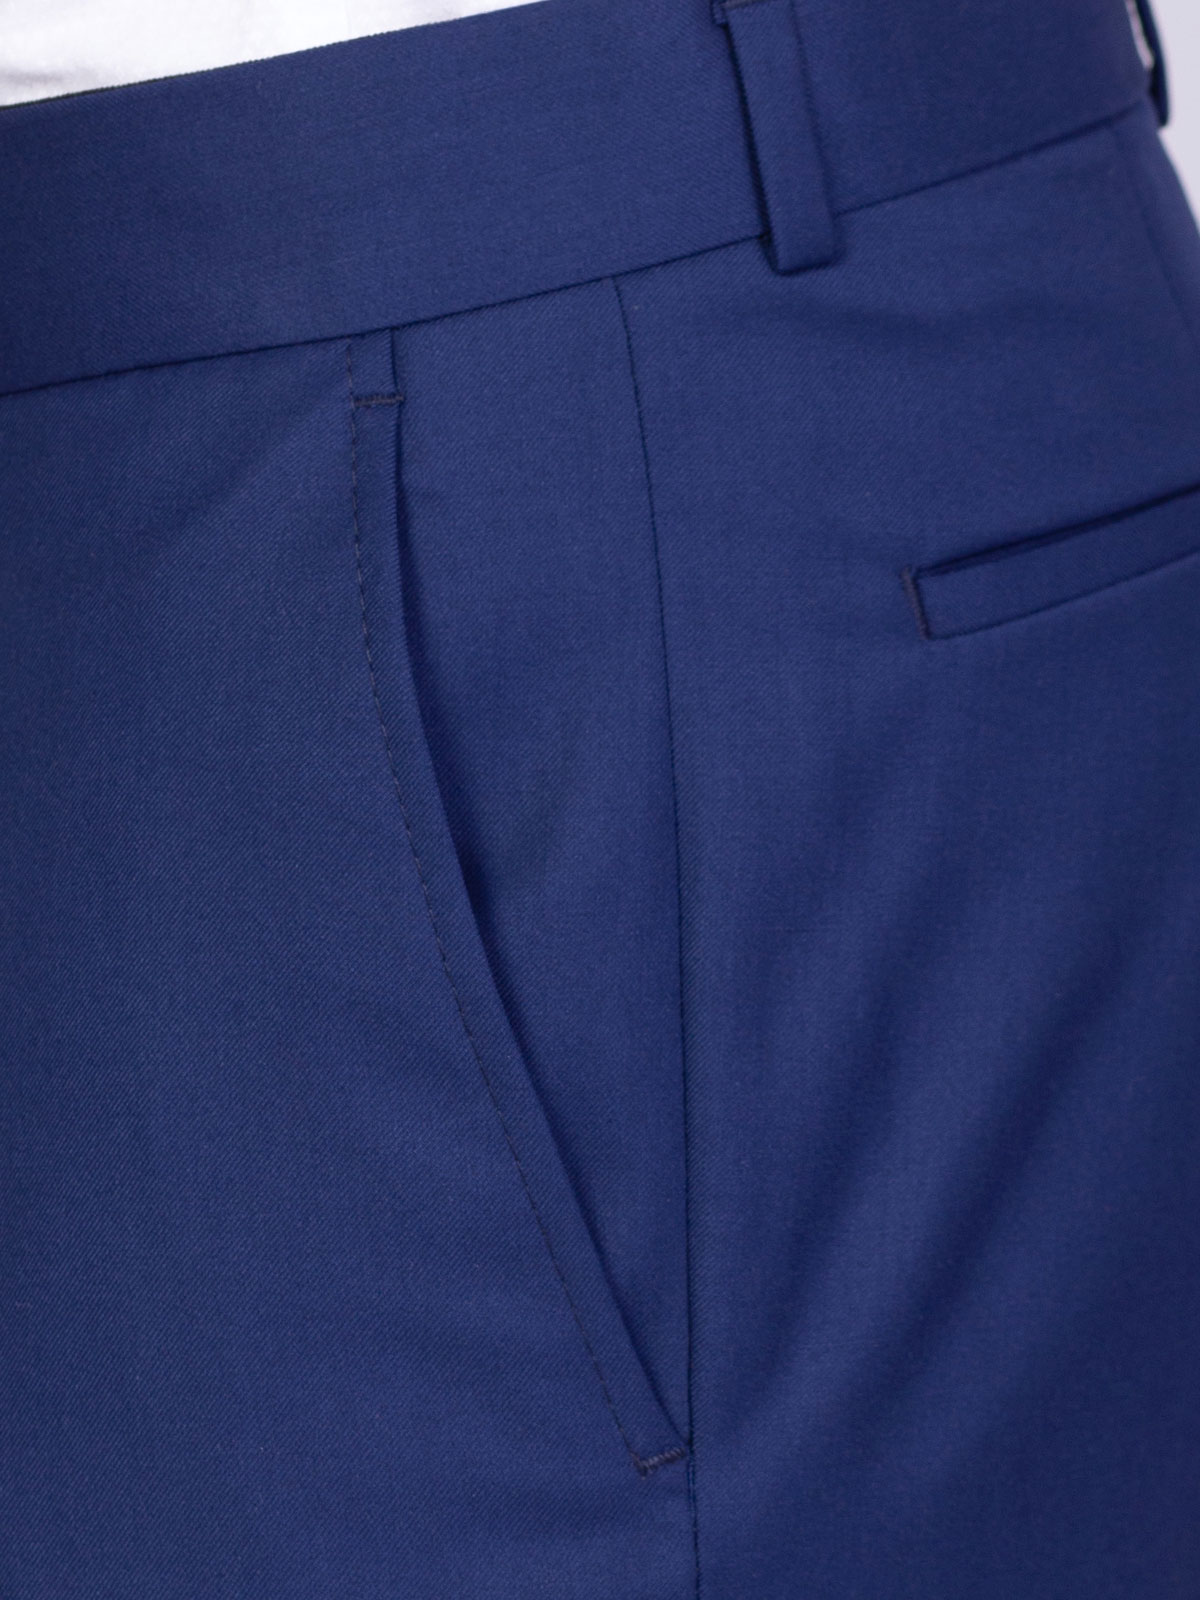 Класически панталон в синьо - 63330 108.00 лв img3